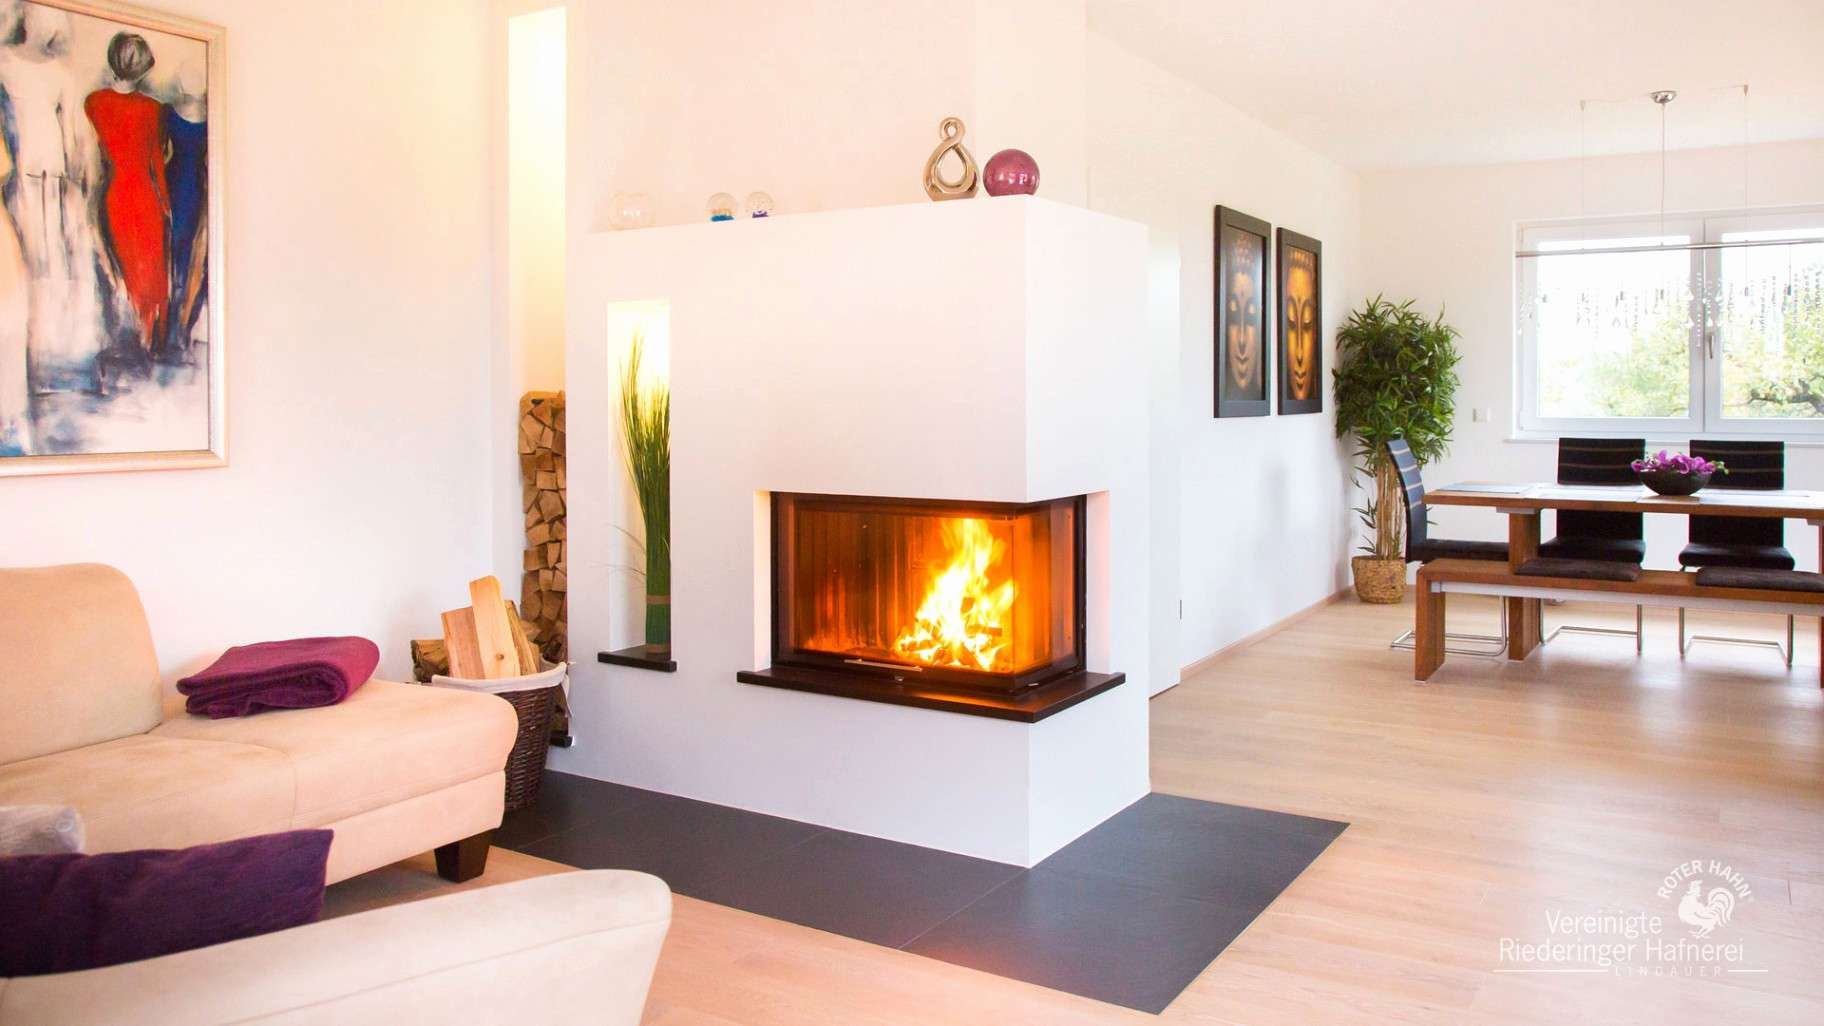 Fireplace Curtain Awesome Wohnzimmer Im Landhausstil Konzept Die Beste Idee In Diesem